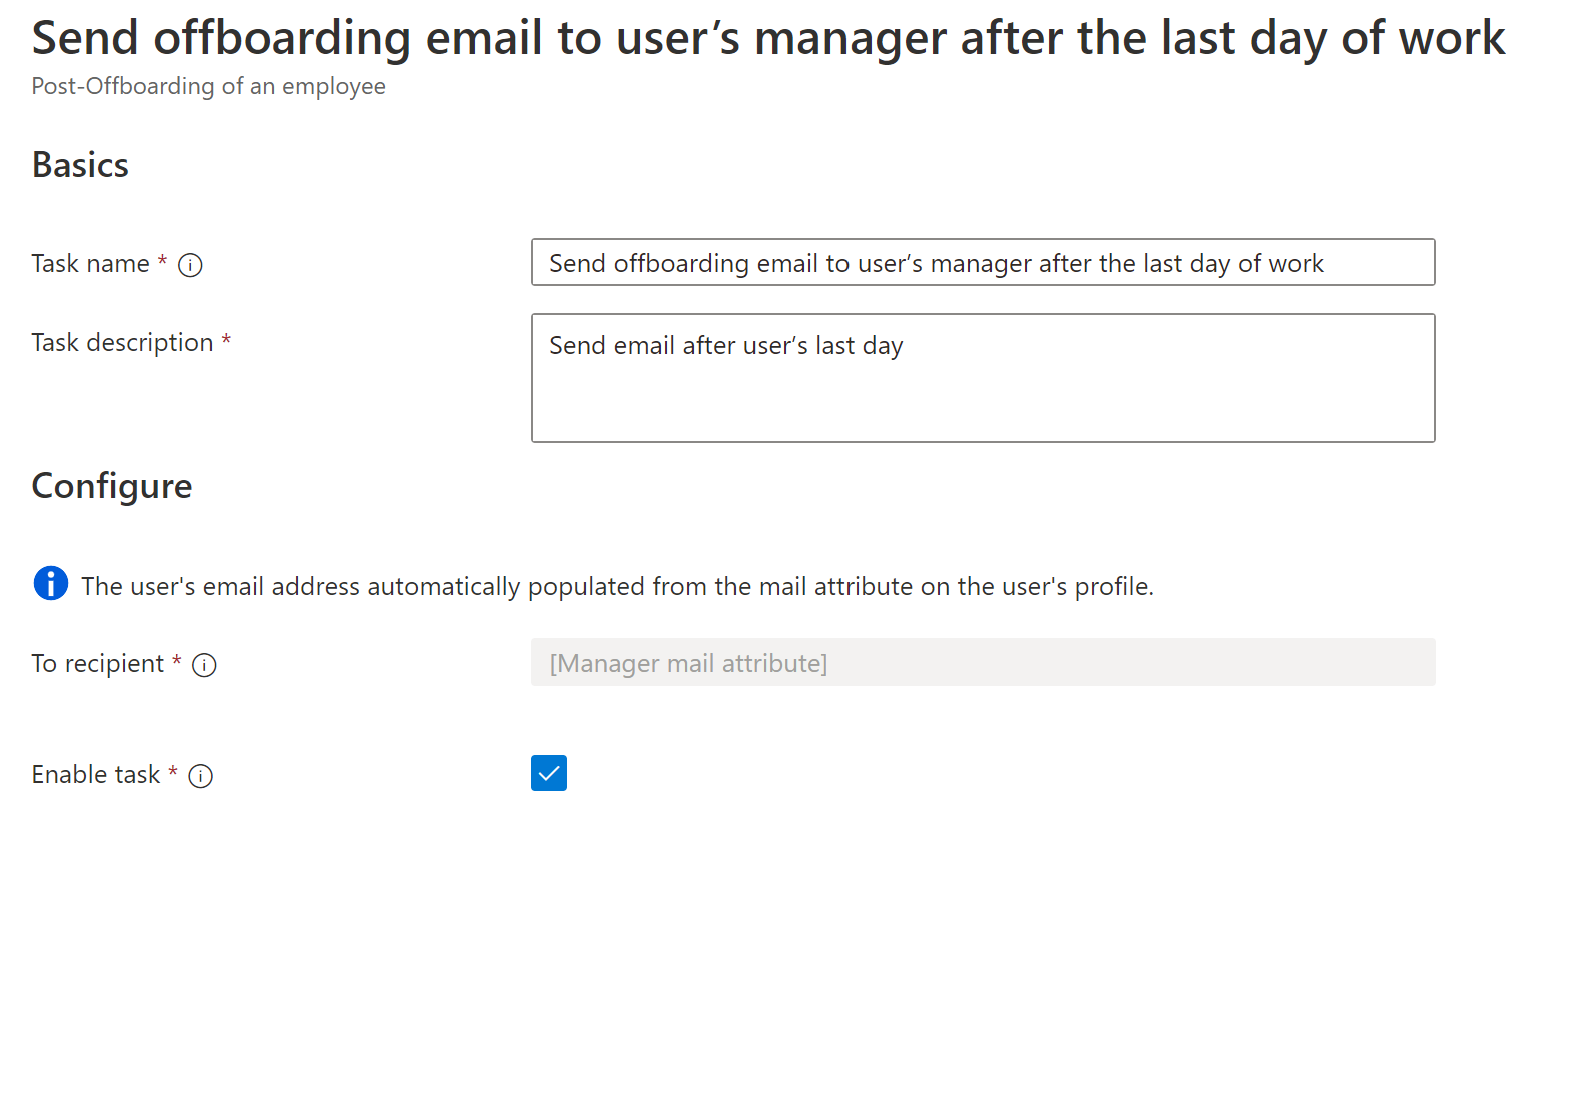 工作流程工作的螢幕快照：在最後一天之後傳送離職電子郵件給使用者管理員。